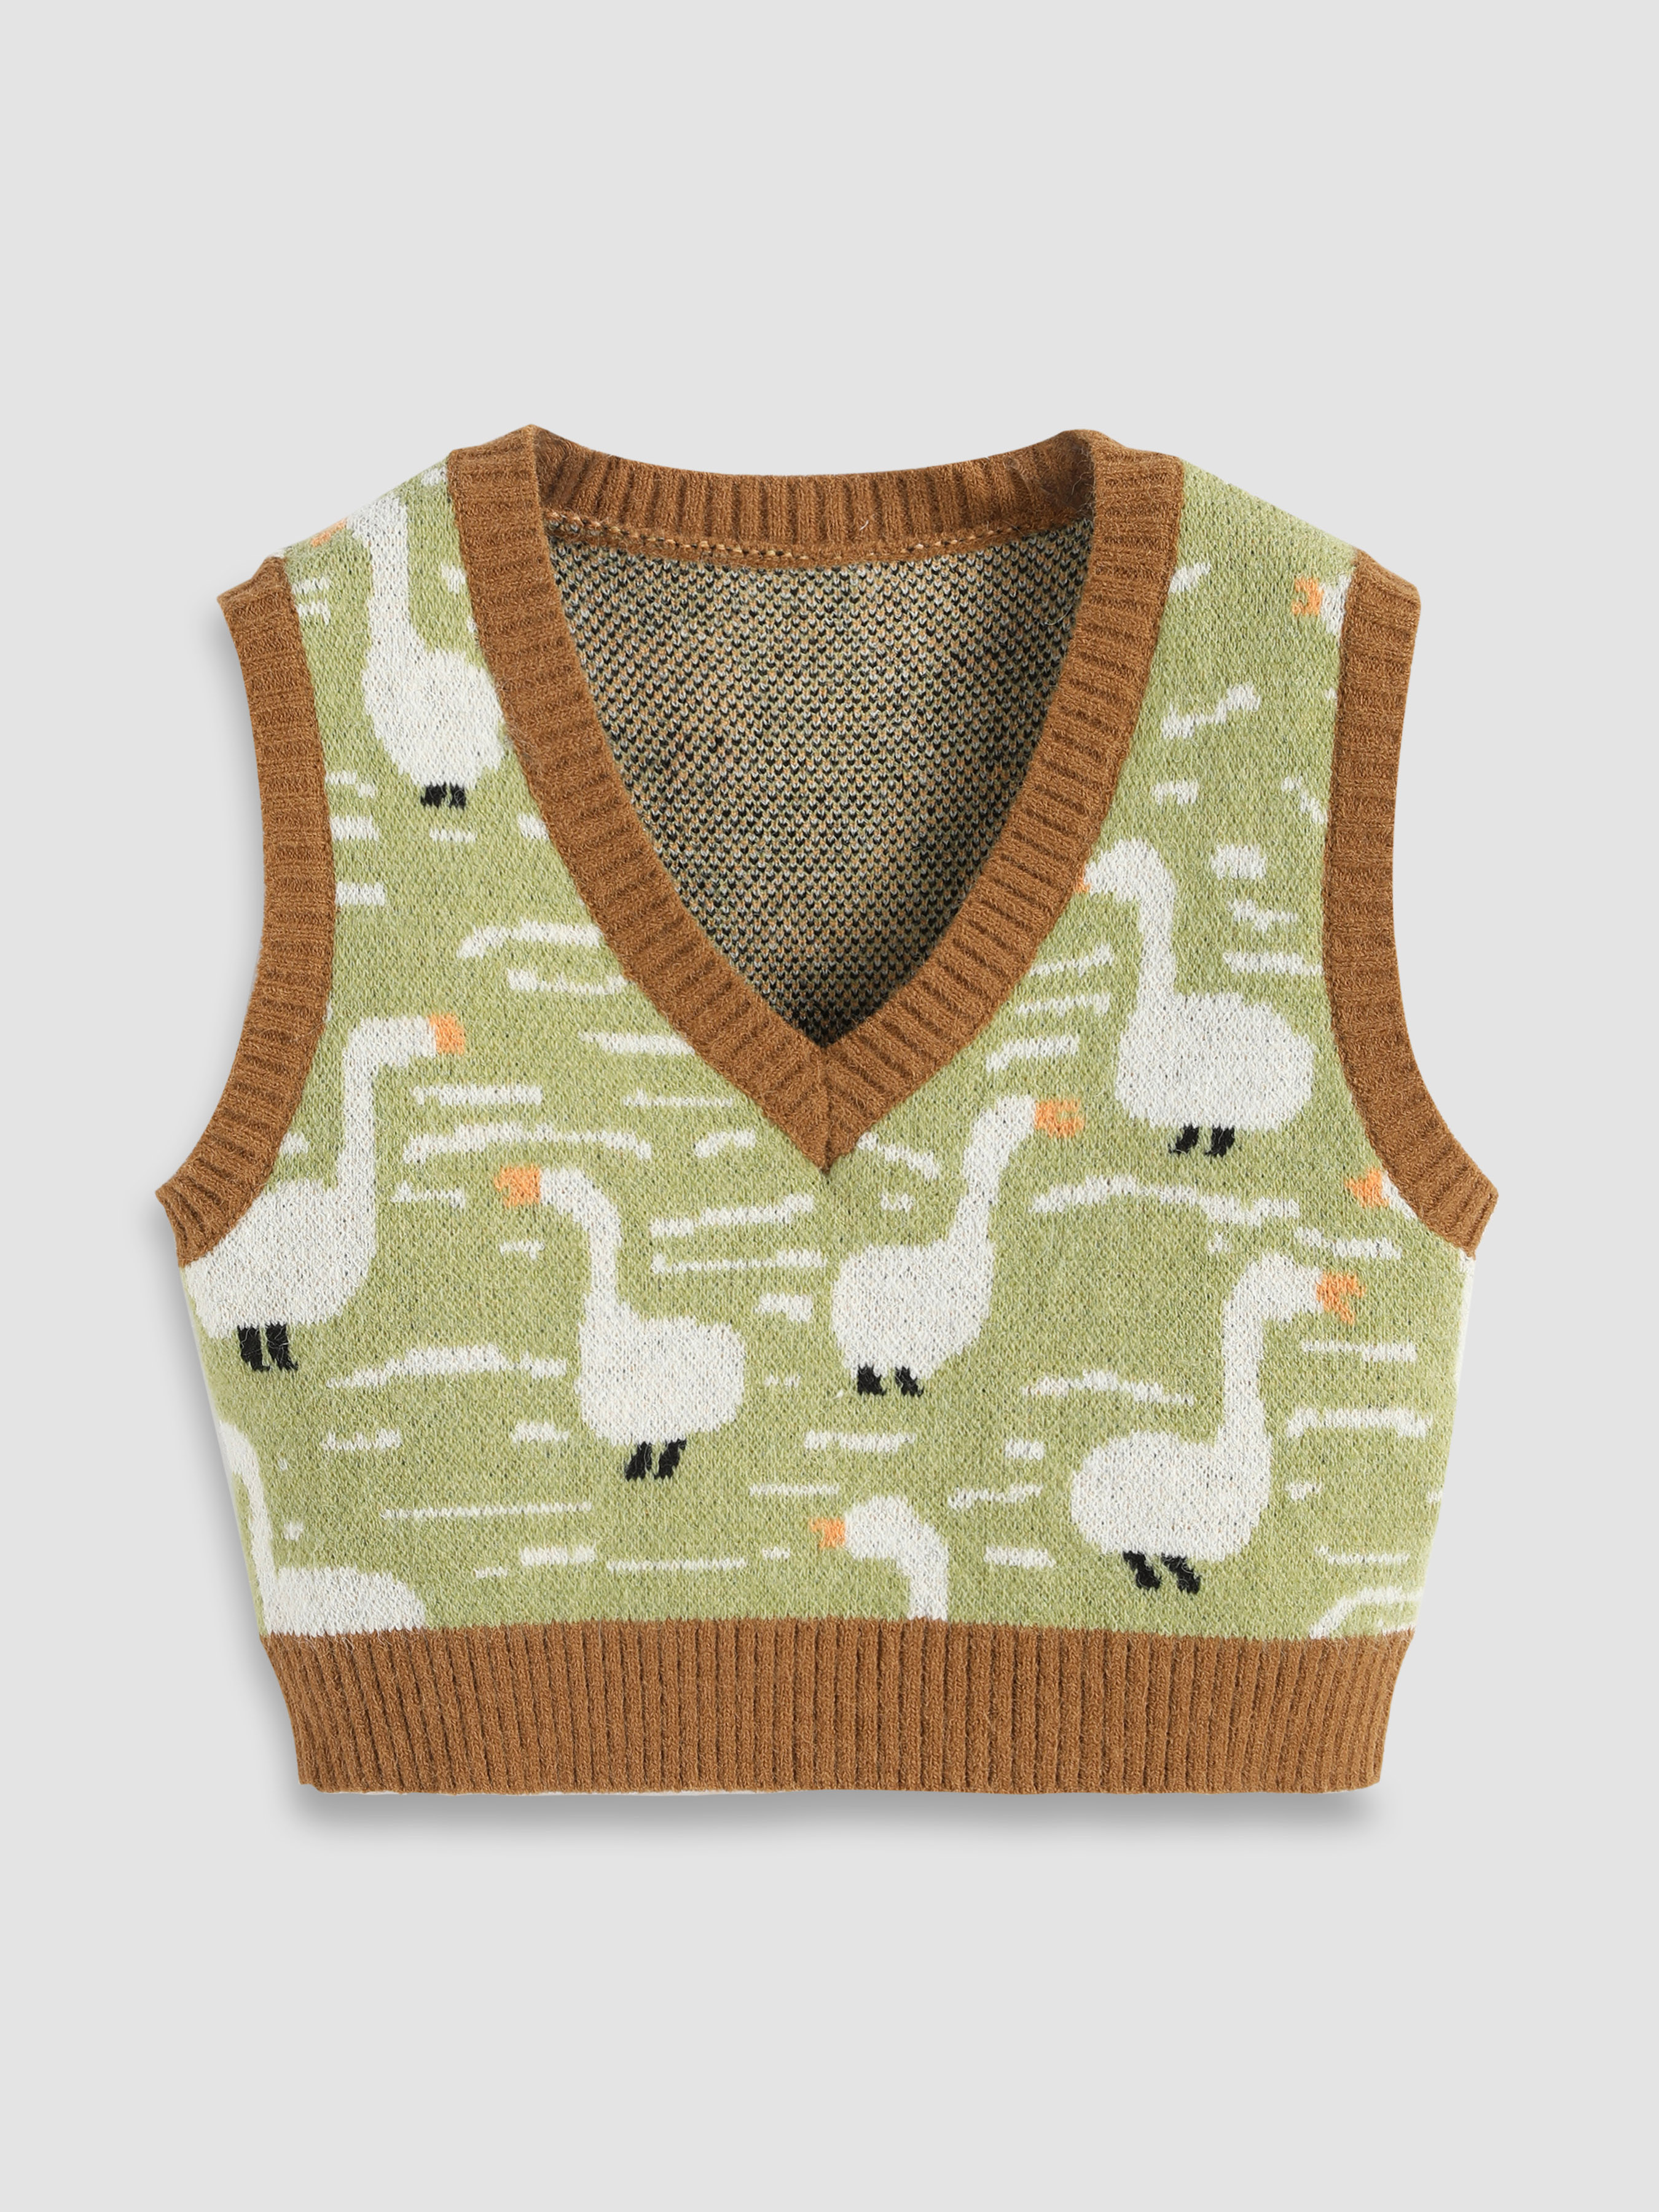 Cute Duck Sweater Vest from Apollo Box